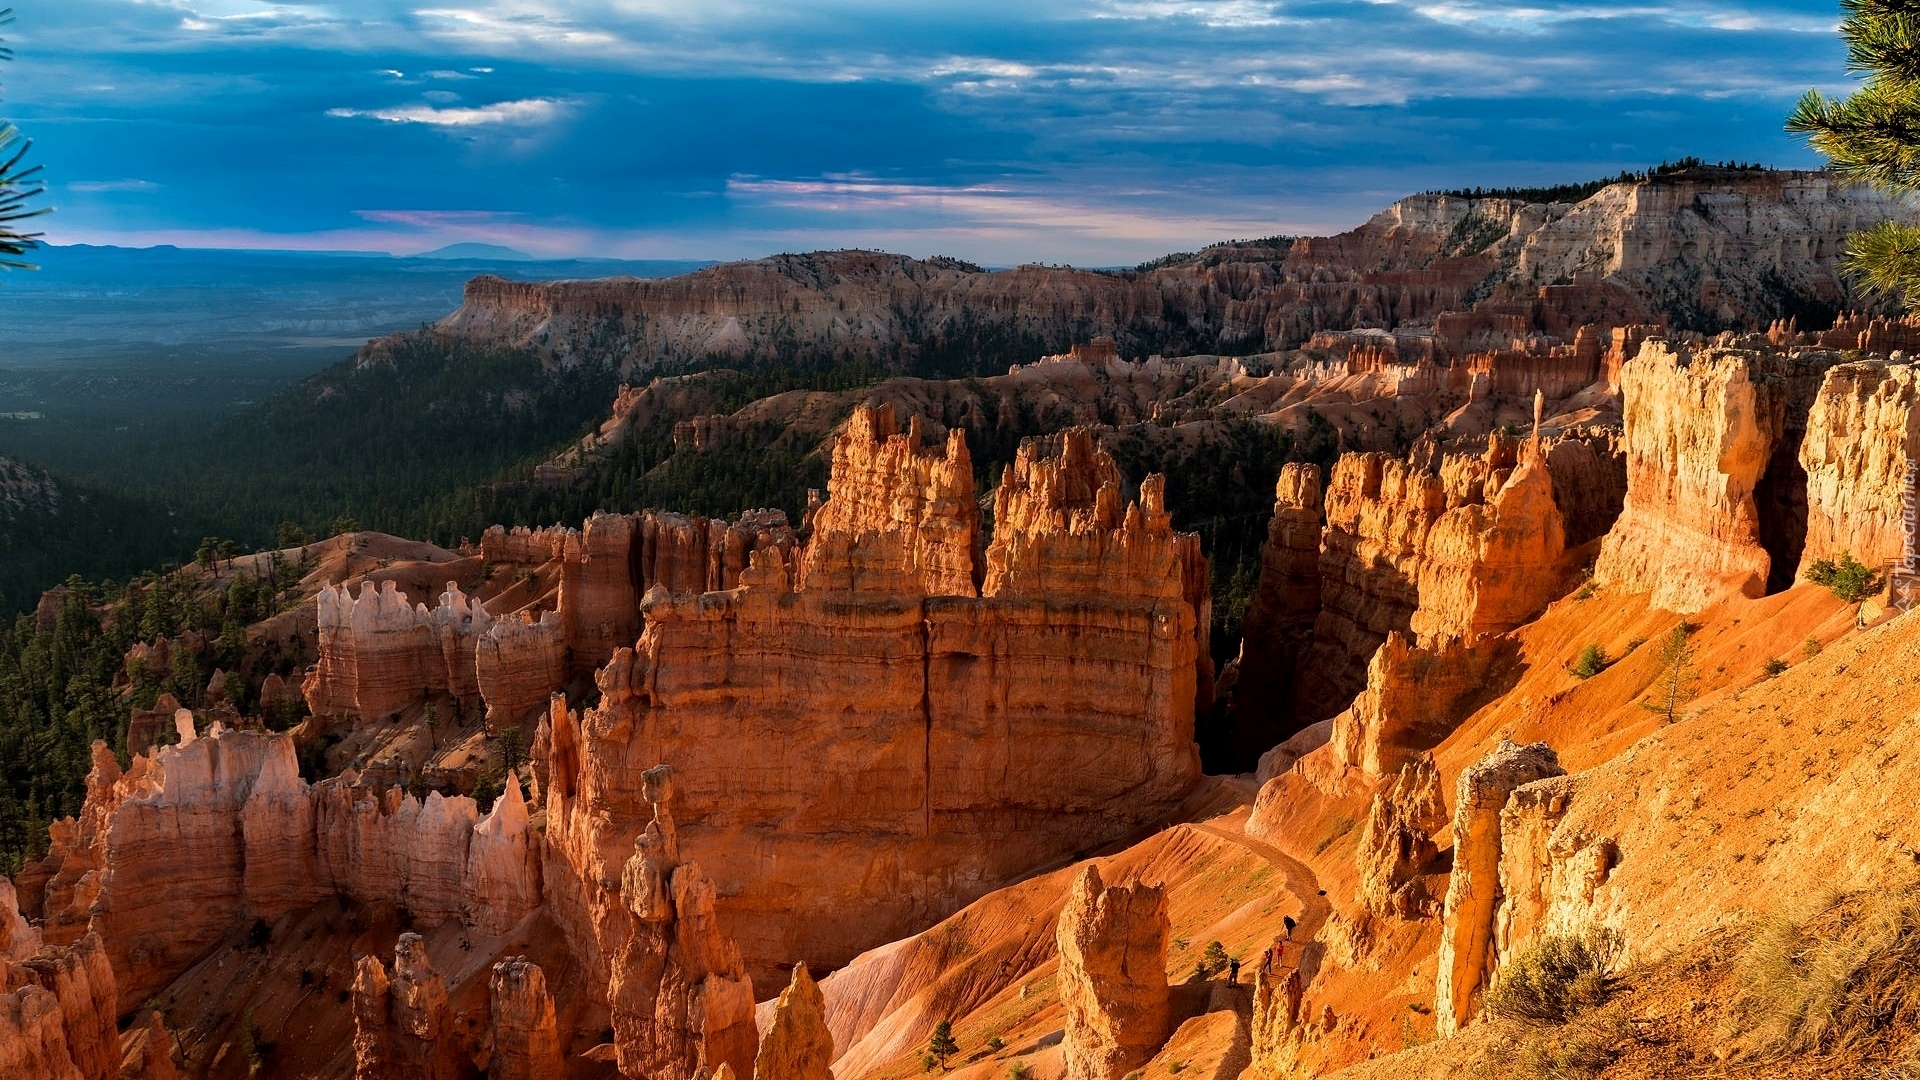 Park Narodowy Bryce Canyon, Stan Utah, Stany Zjednoczone, Kanion, Skały